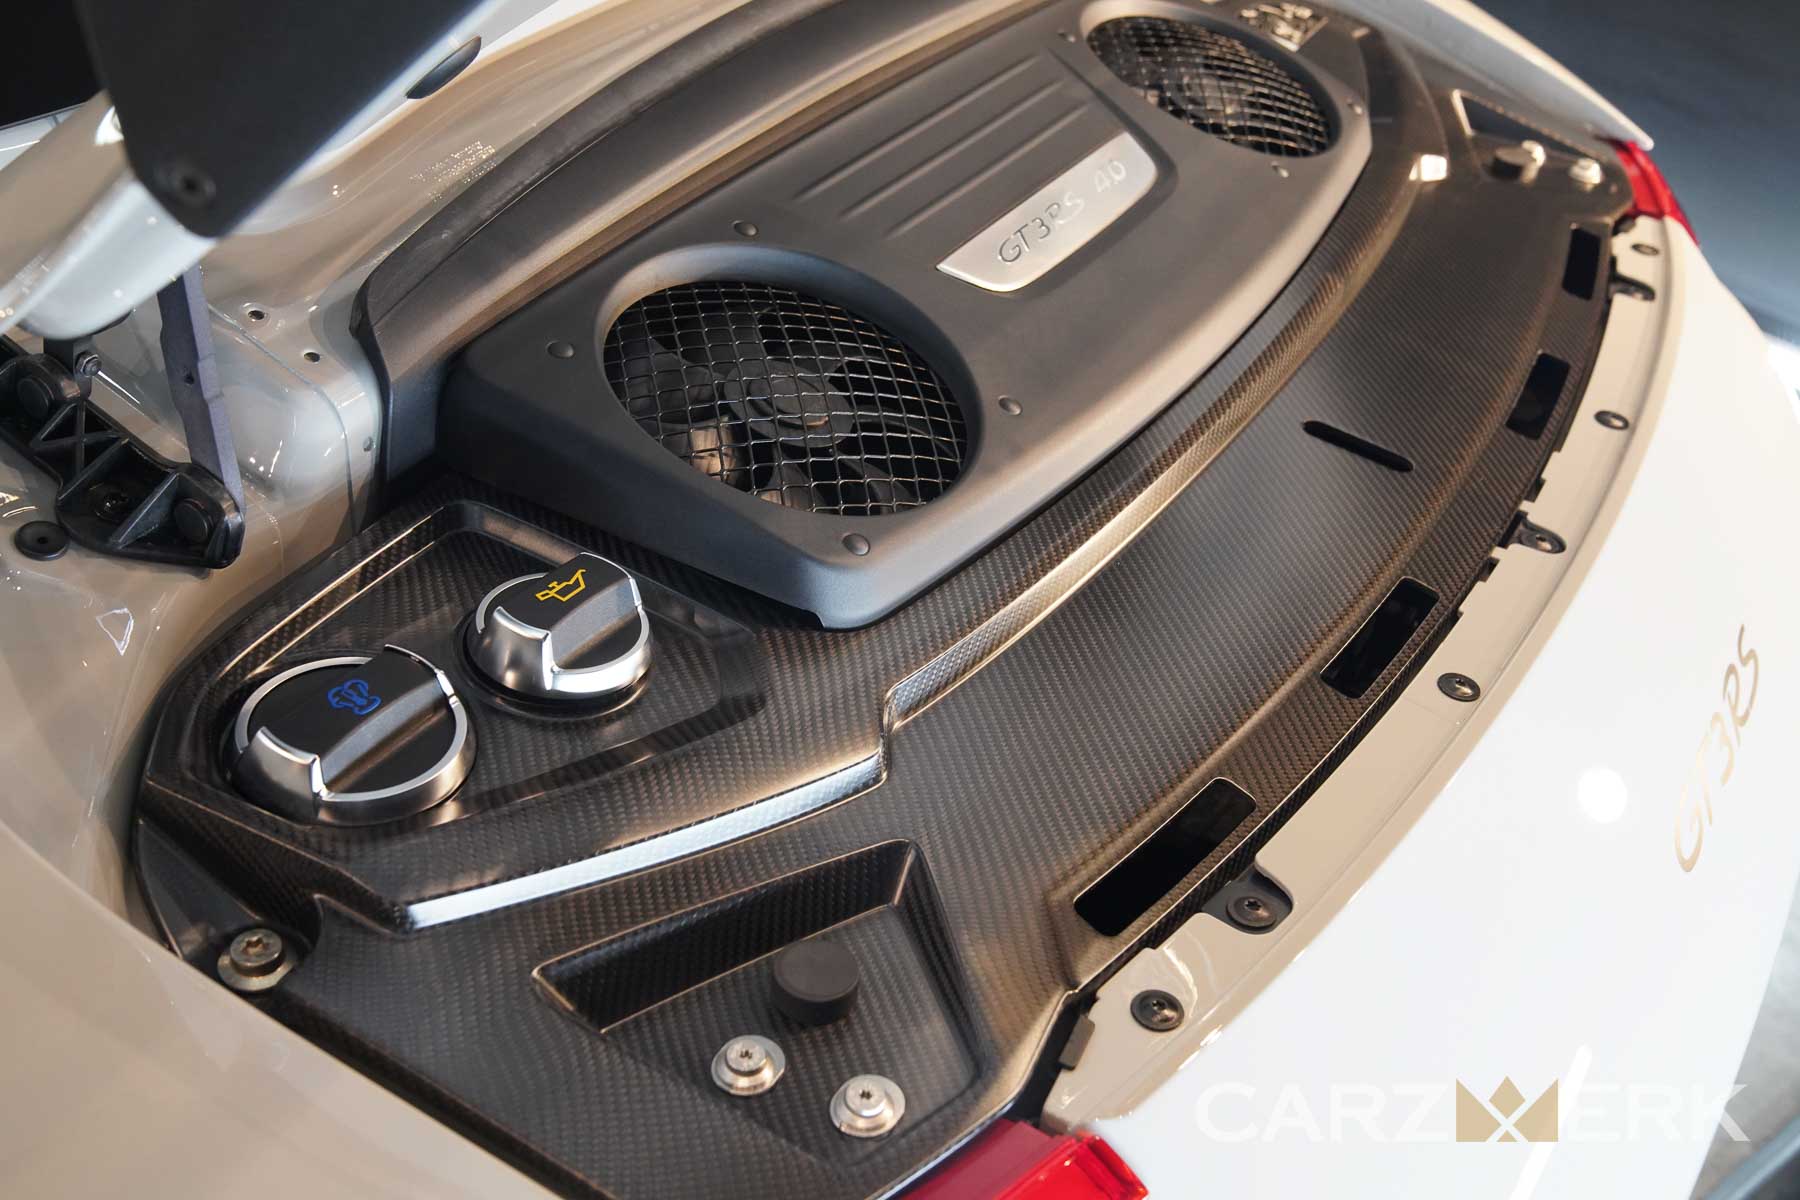 2019 Porsche GT3RS - Chalk White M9A - Engine Bay Detail